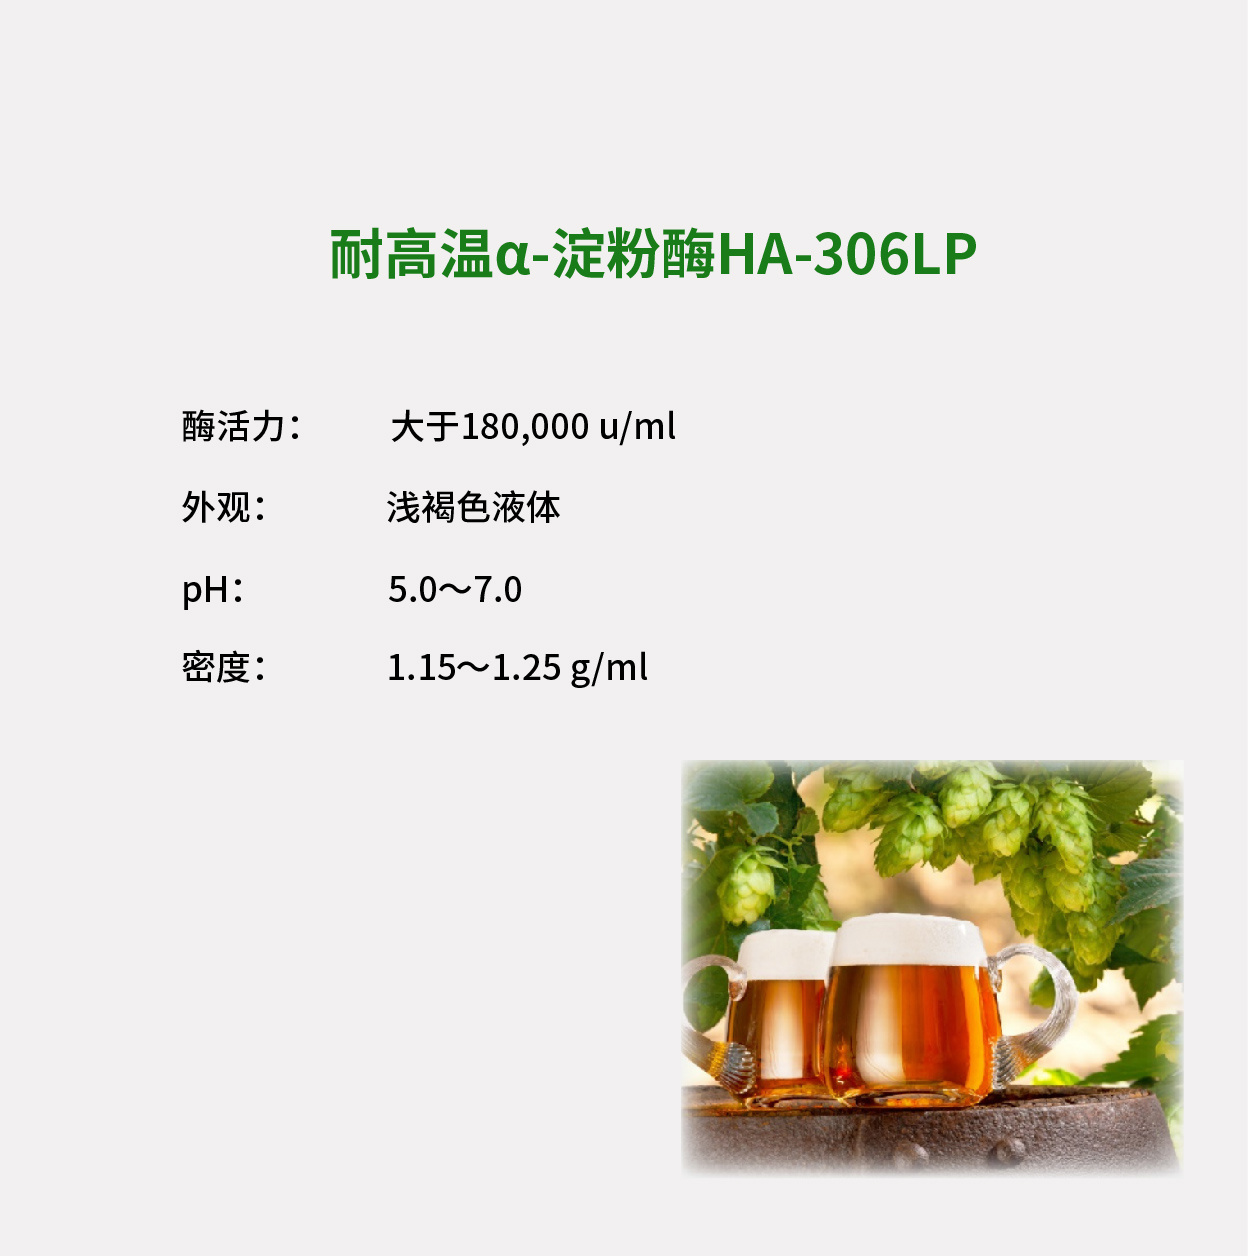 高效α-淀粉酶HA-306LP